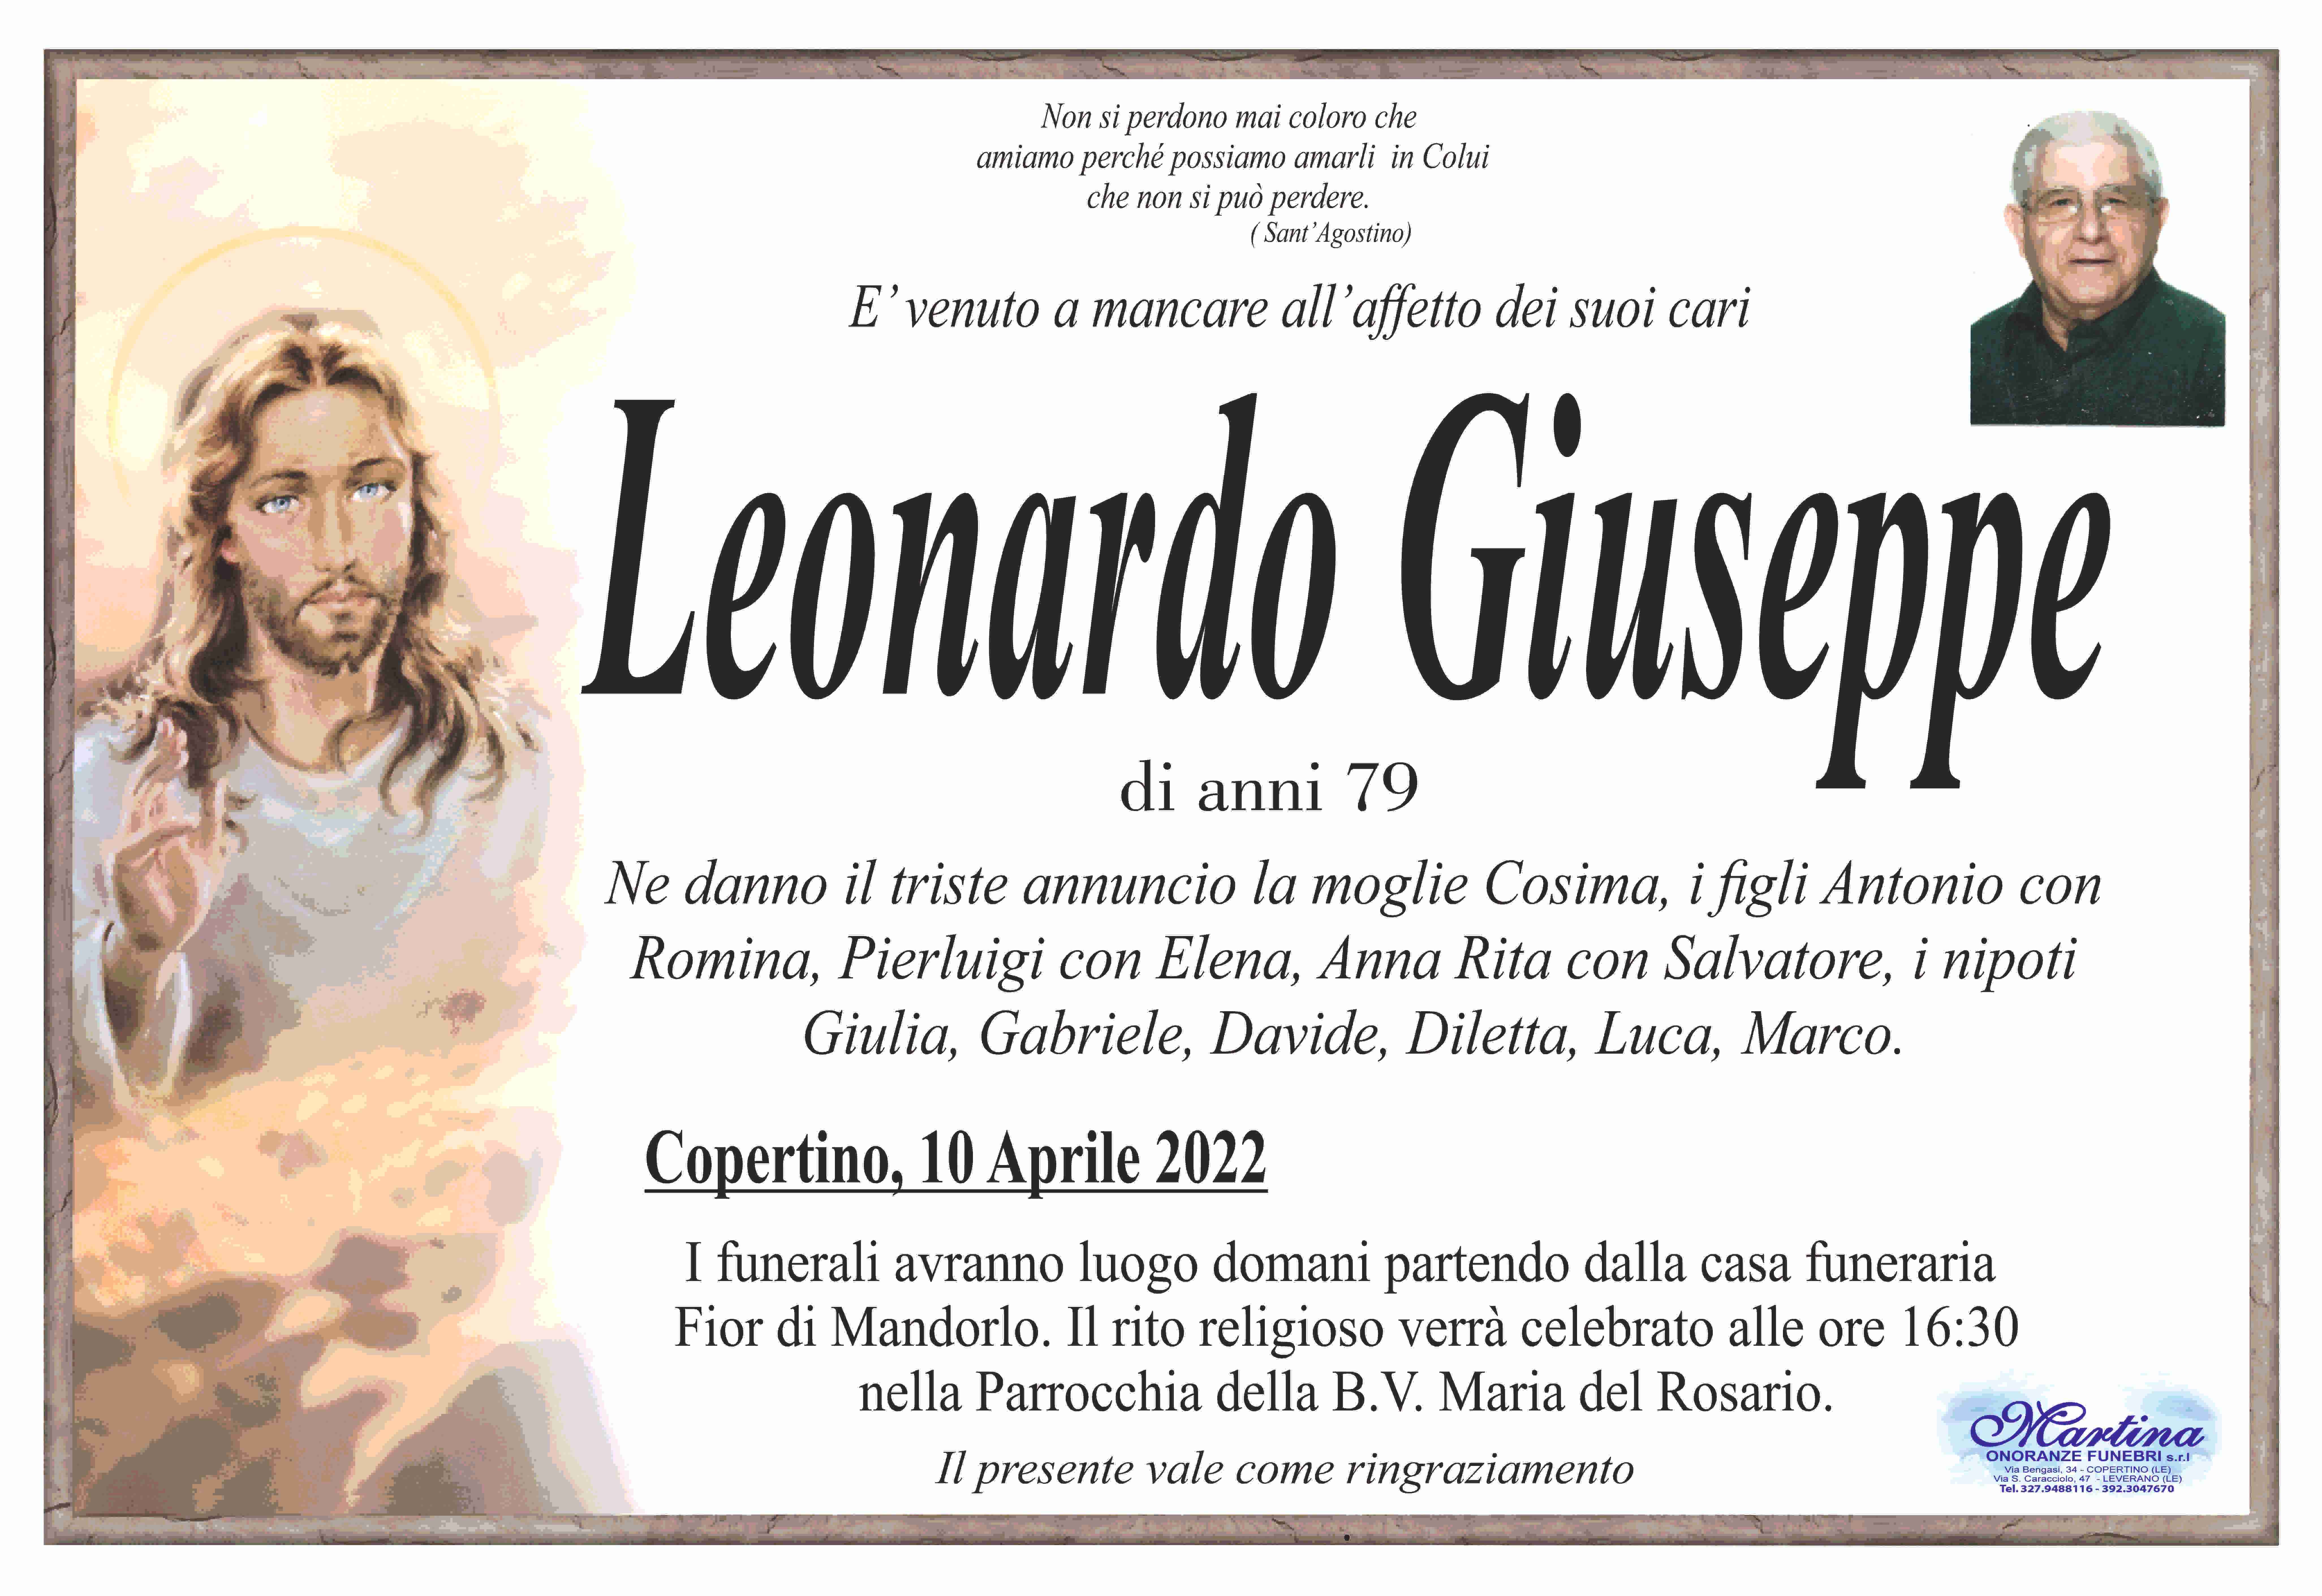 Giuseppe Leonardo